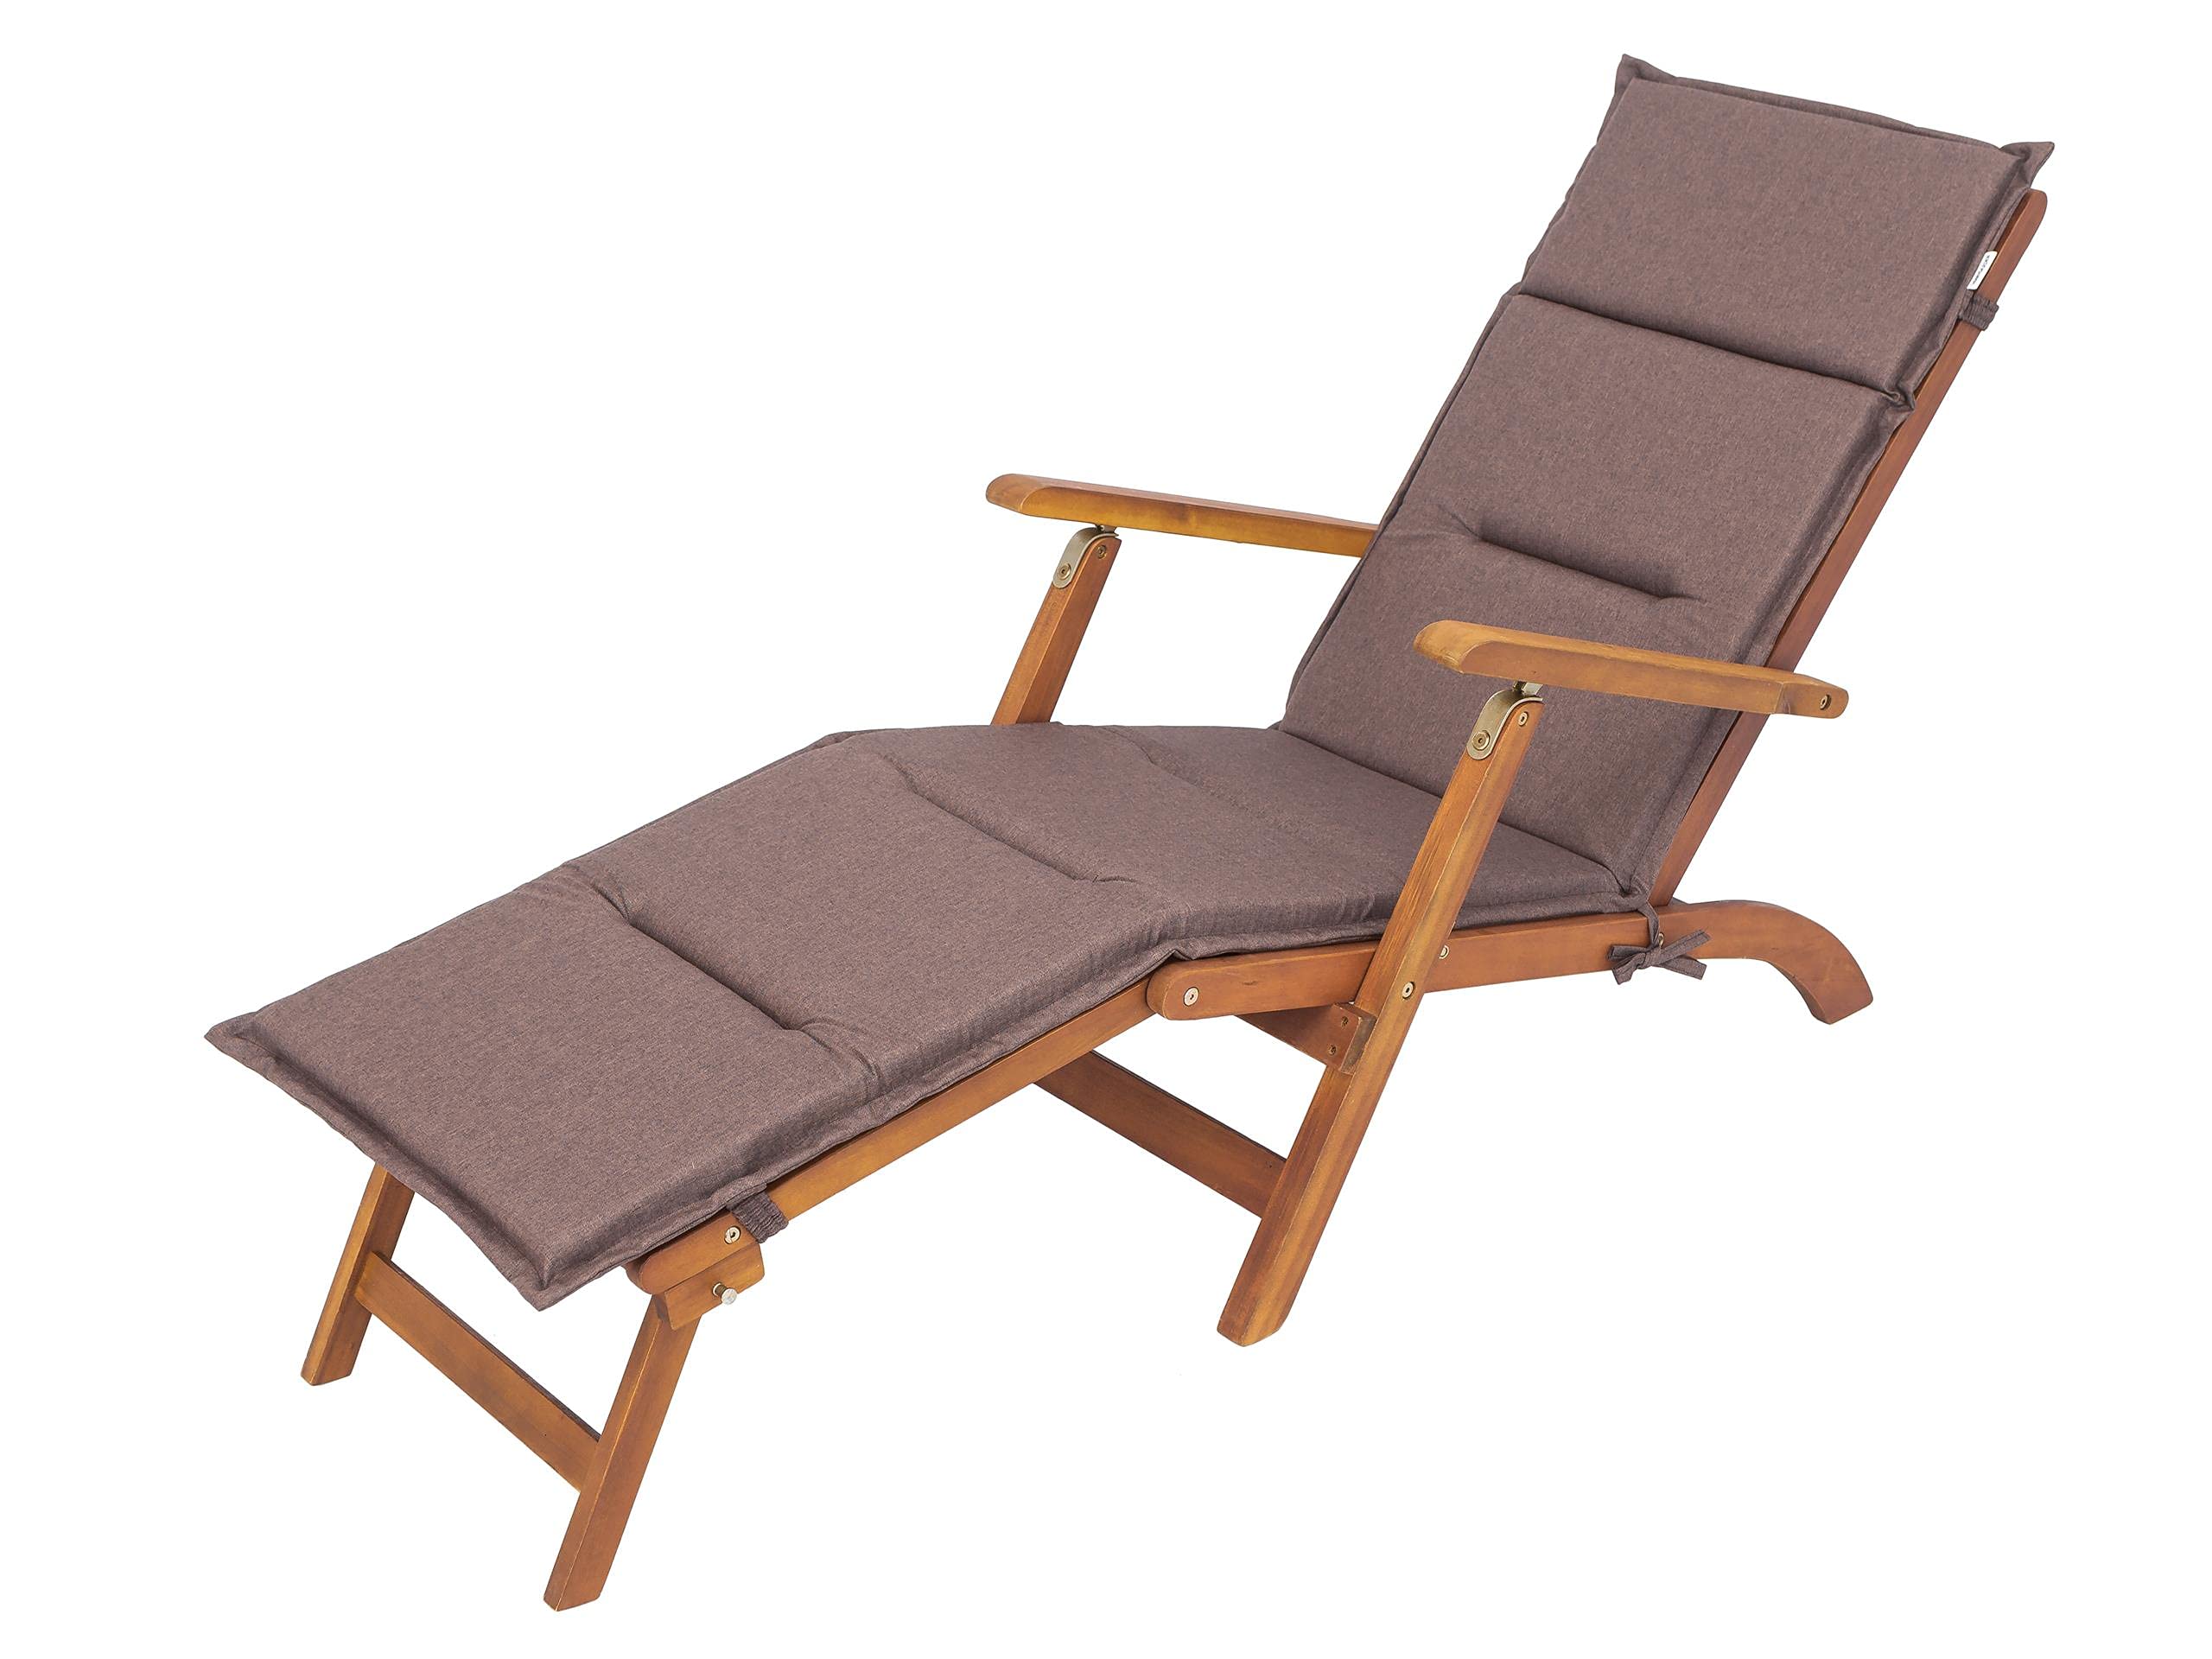 Bjird® Liegenauflage, Auflage für Gartenliege 182 x 42 x 4 cm, Auflagen für Deckchair, Polsterauflage für Sonnenliege, Kissen für Liegestuhl - Braun